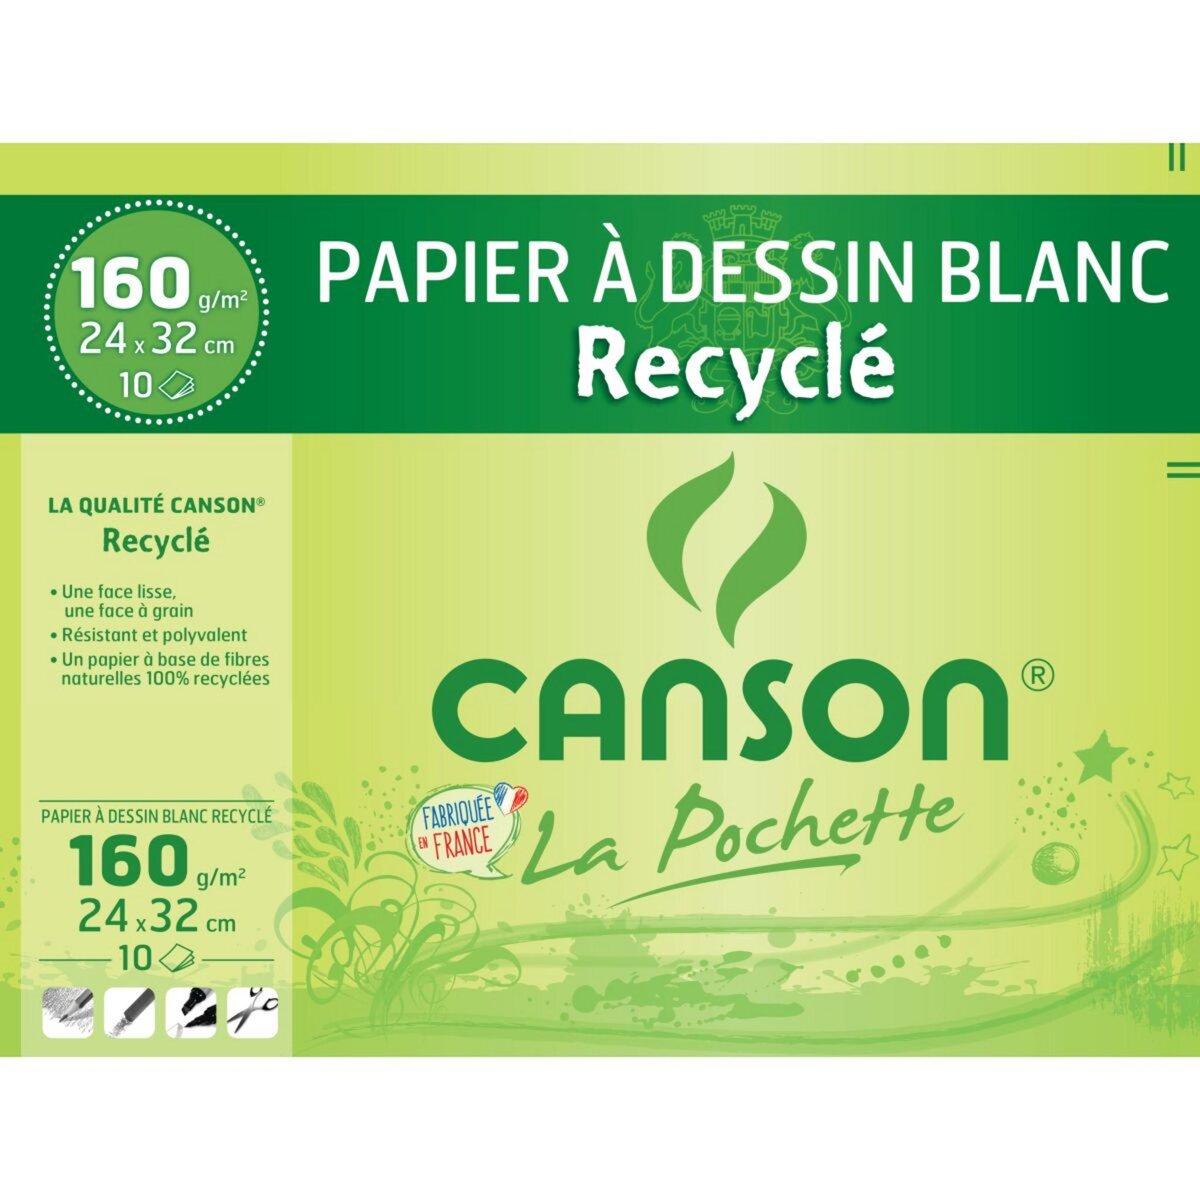 CANSON Pochette de papier à dessin recyclé 10 feuilles 24x32cm 160g/m2 blanc